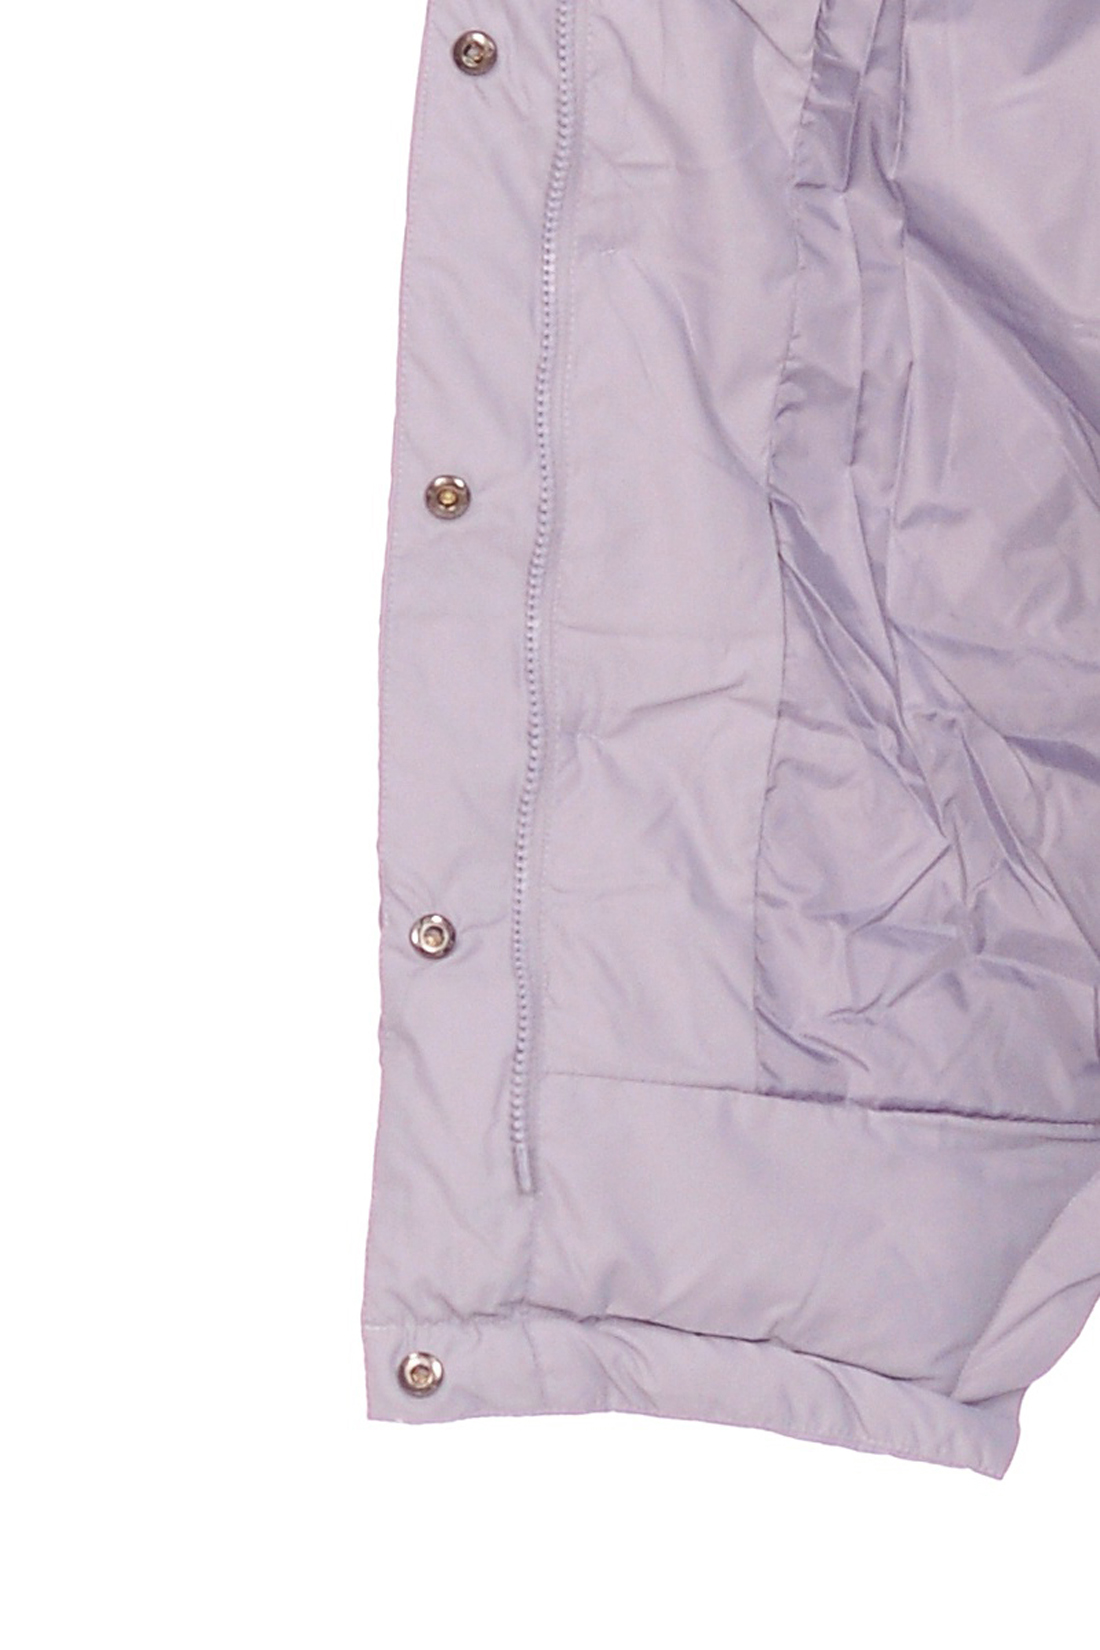 Куртка-кокон с накладными карманами (арт. baon B038582), размер XXL, цвет сиреневый Куртка-кокон с накладными карманами (арт. baon B038582) - фото 4